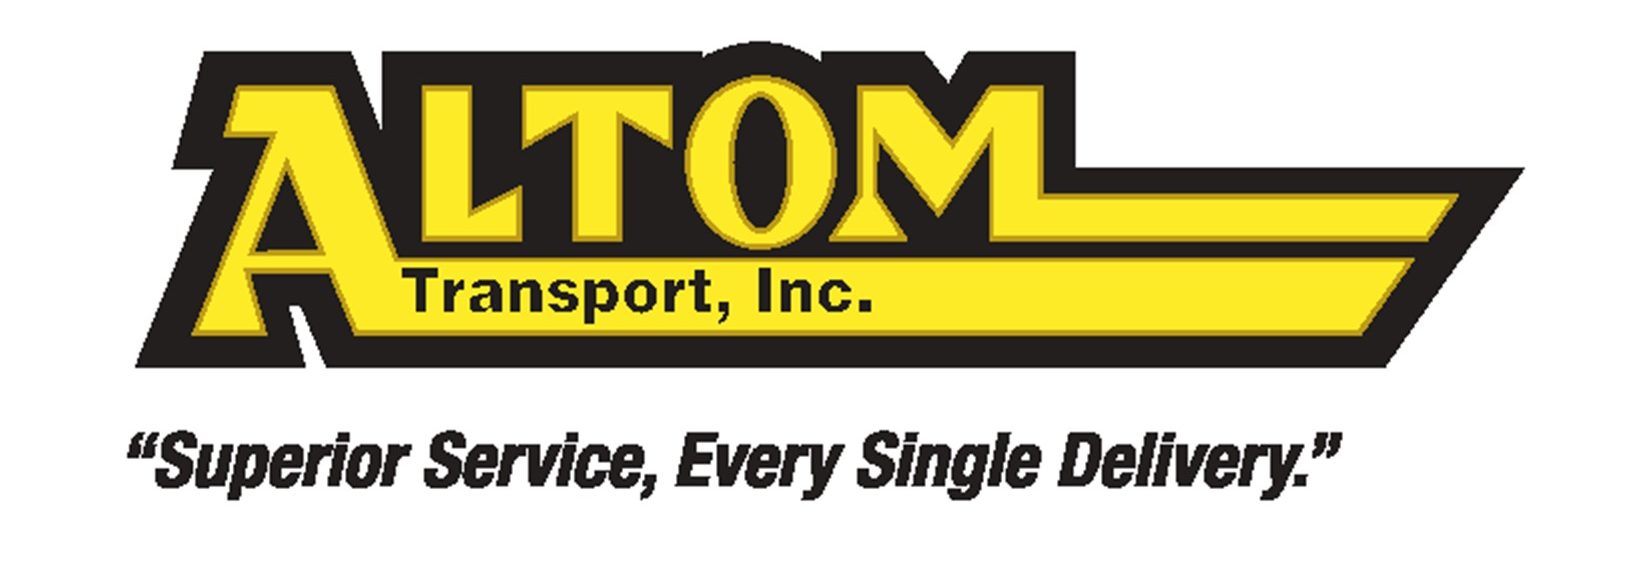 Altom-Transport-Logo-1-e1607440380444